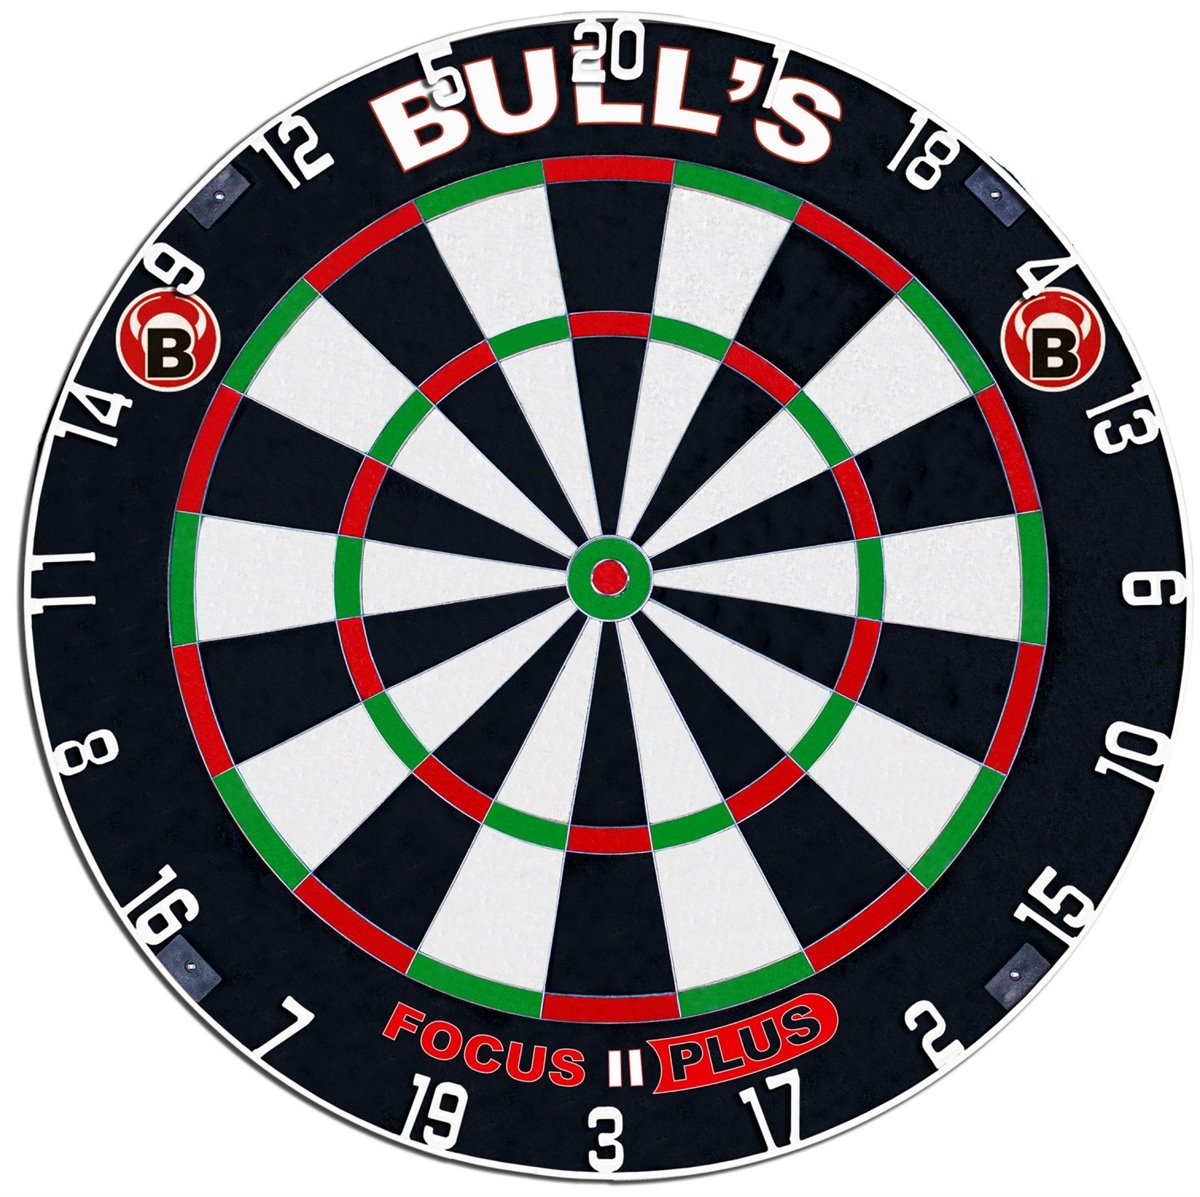 BULL'S Focus II Plus Bristle Dart Board Bristle Board